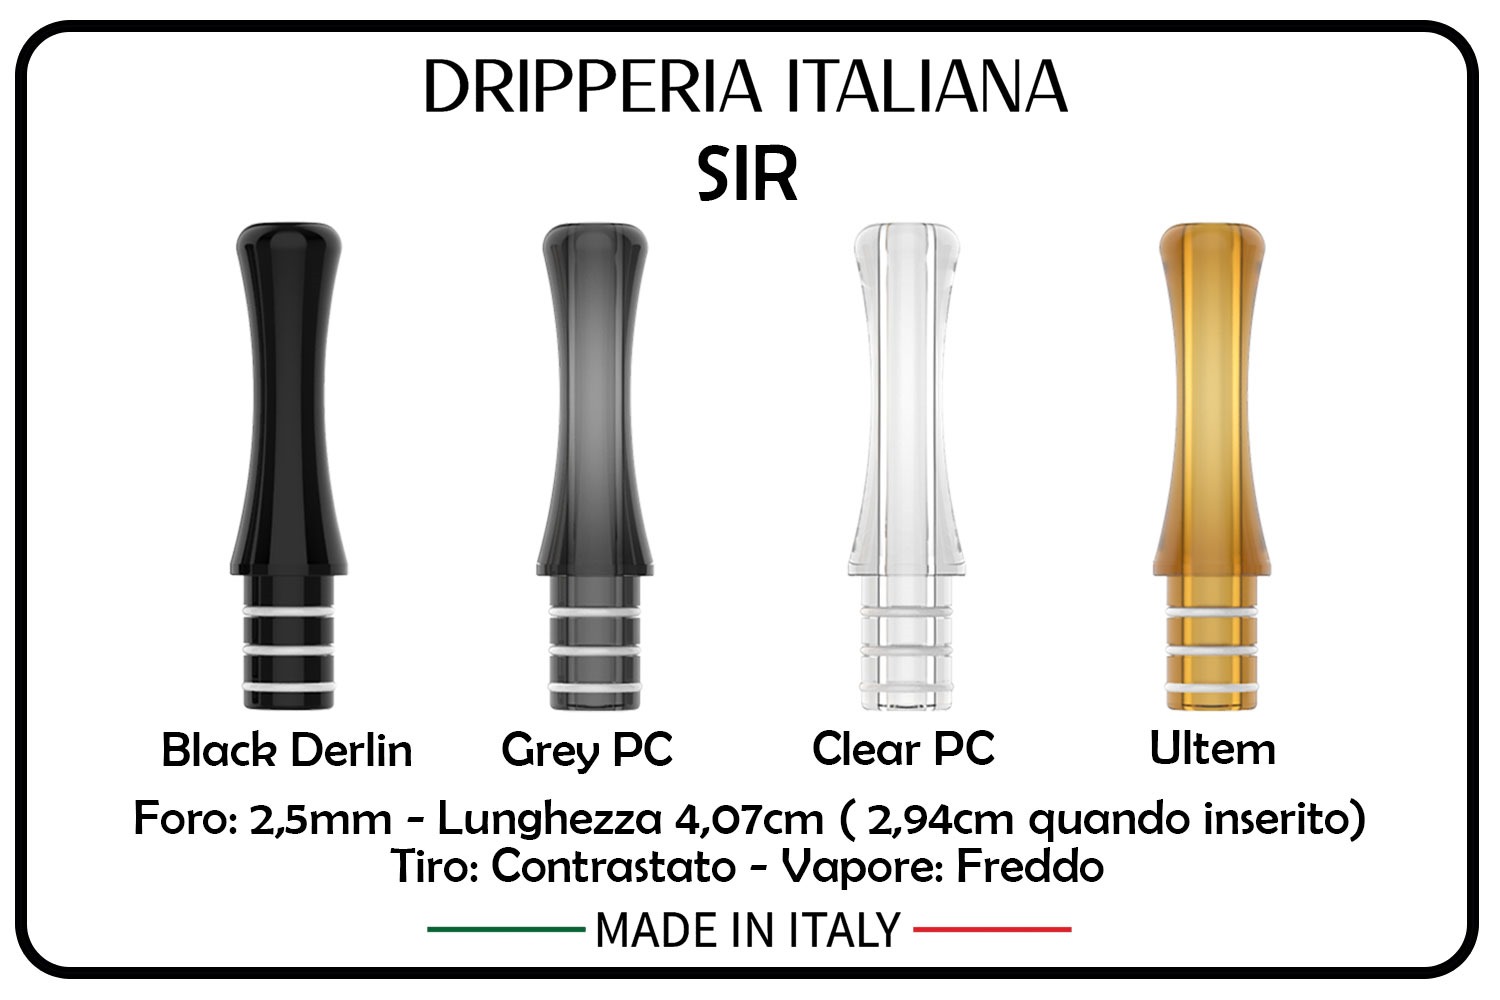 DRIPPERIA ITALIANA - DRIP TIP SIR KIWI & M1 POD EDITION - ULTEM